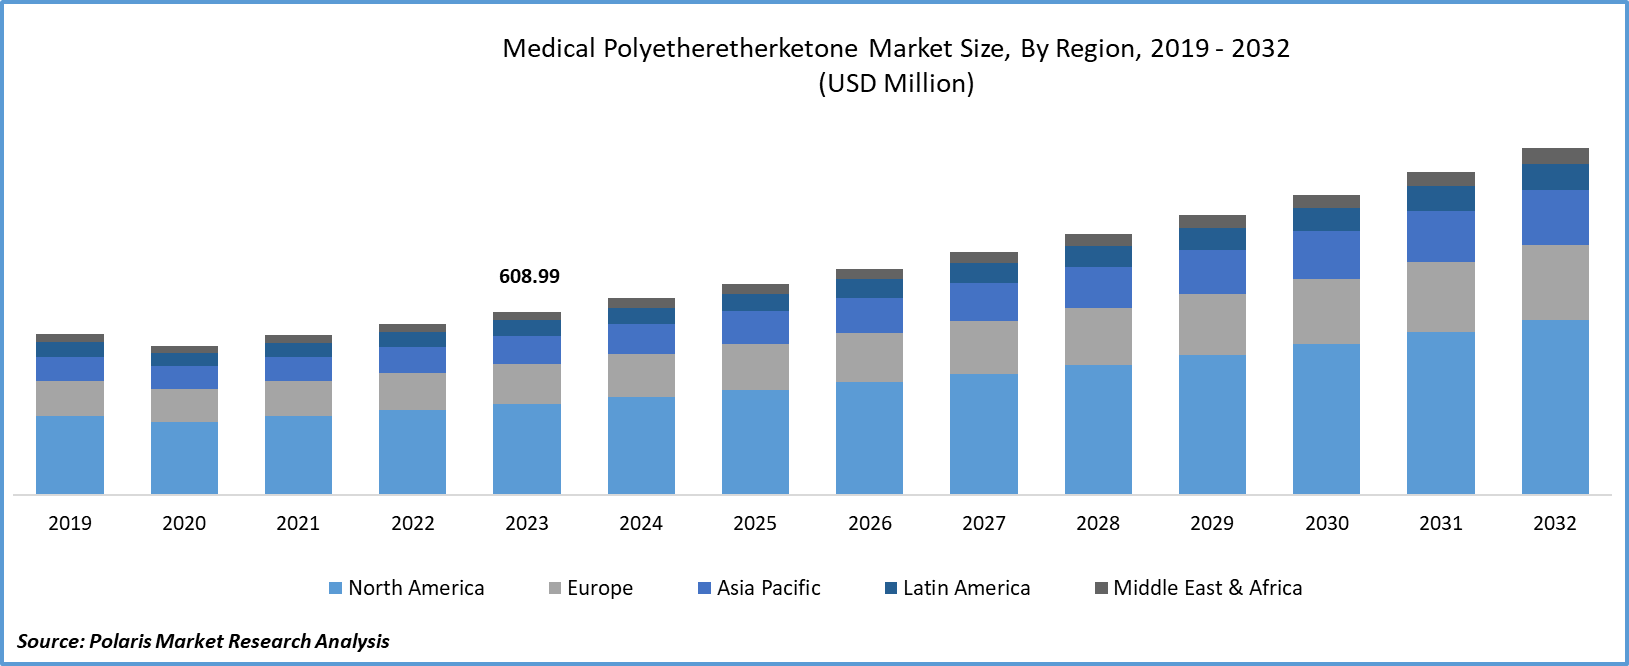 Medical Polyetheretherketone Market Size